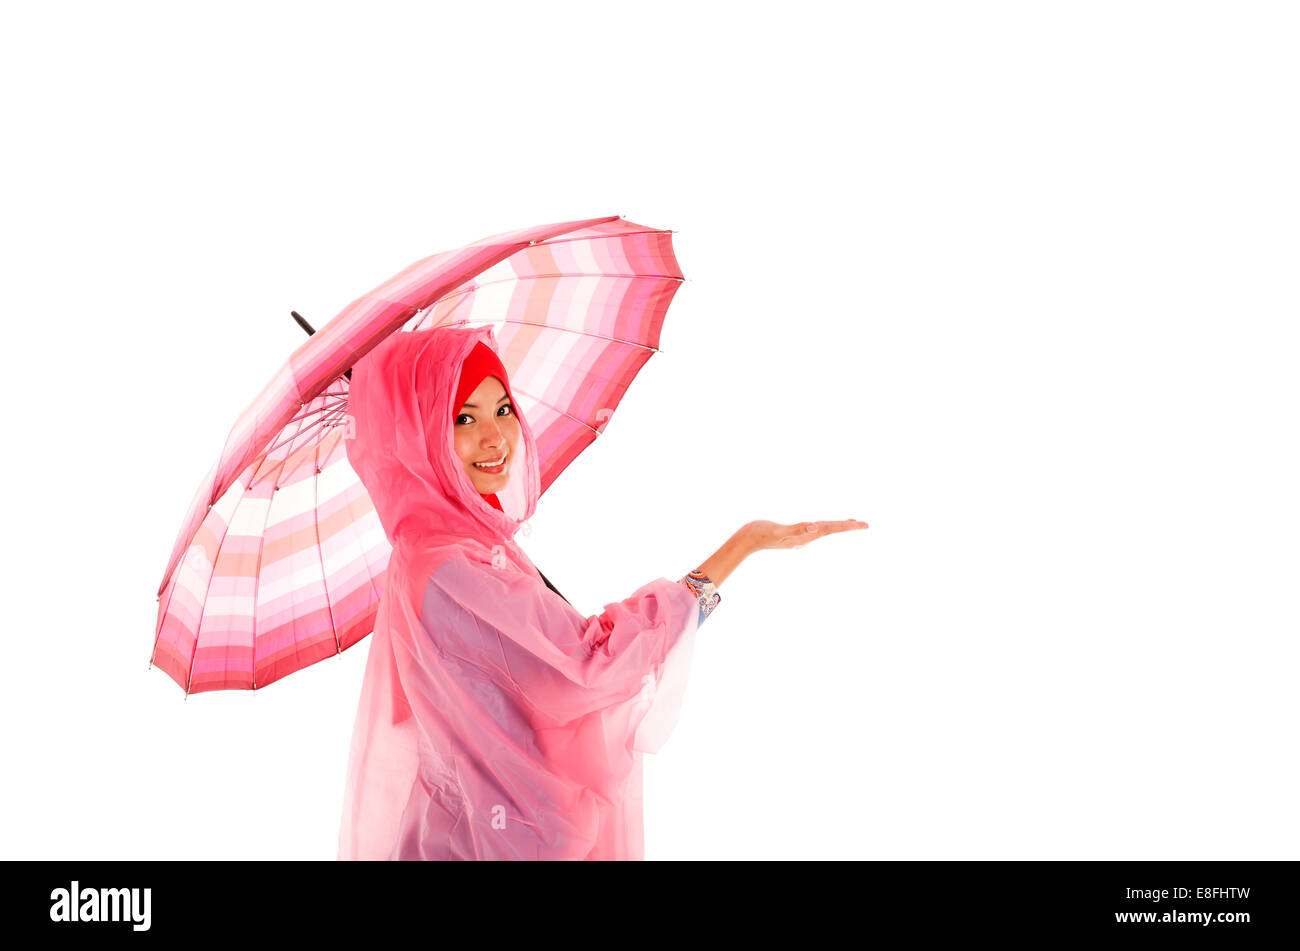 Porträt eines lächelnden muslimischen Teenagers, das einen Regenschirm hält Stockfoto